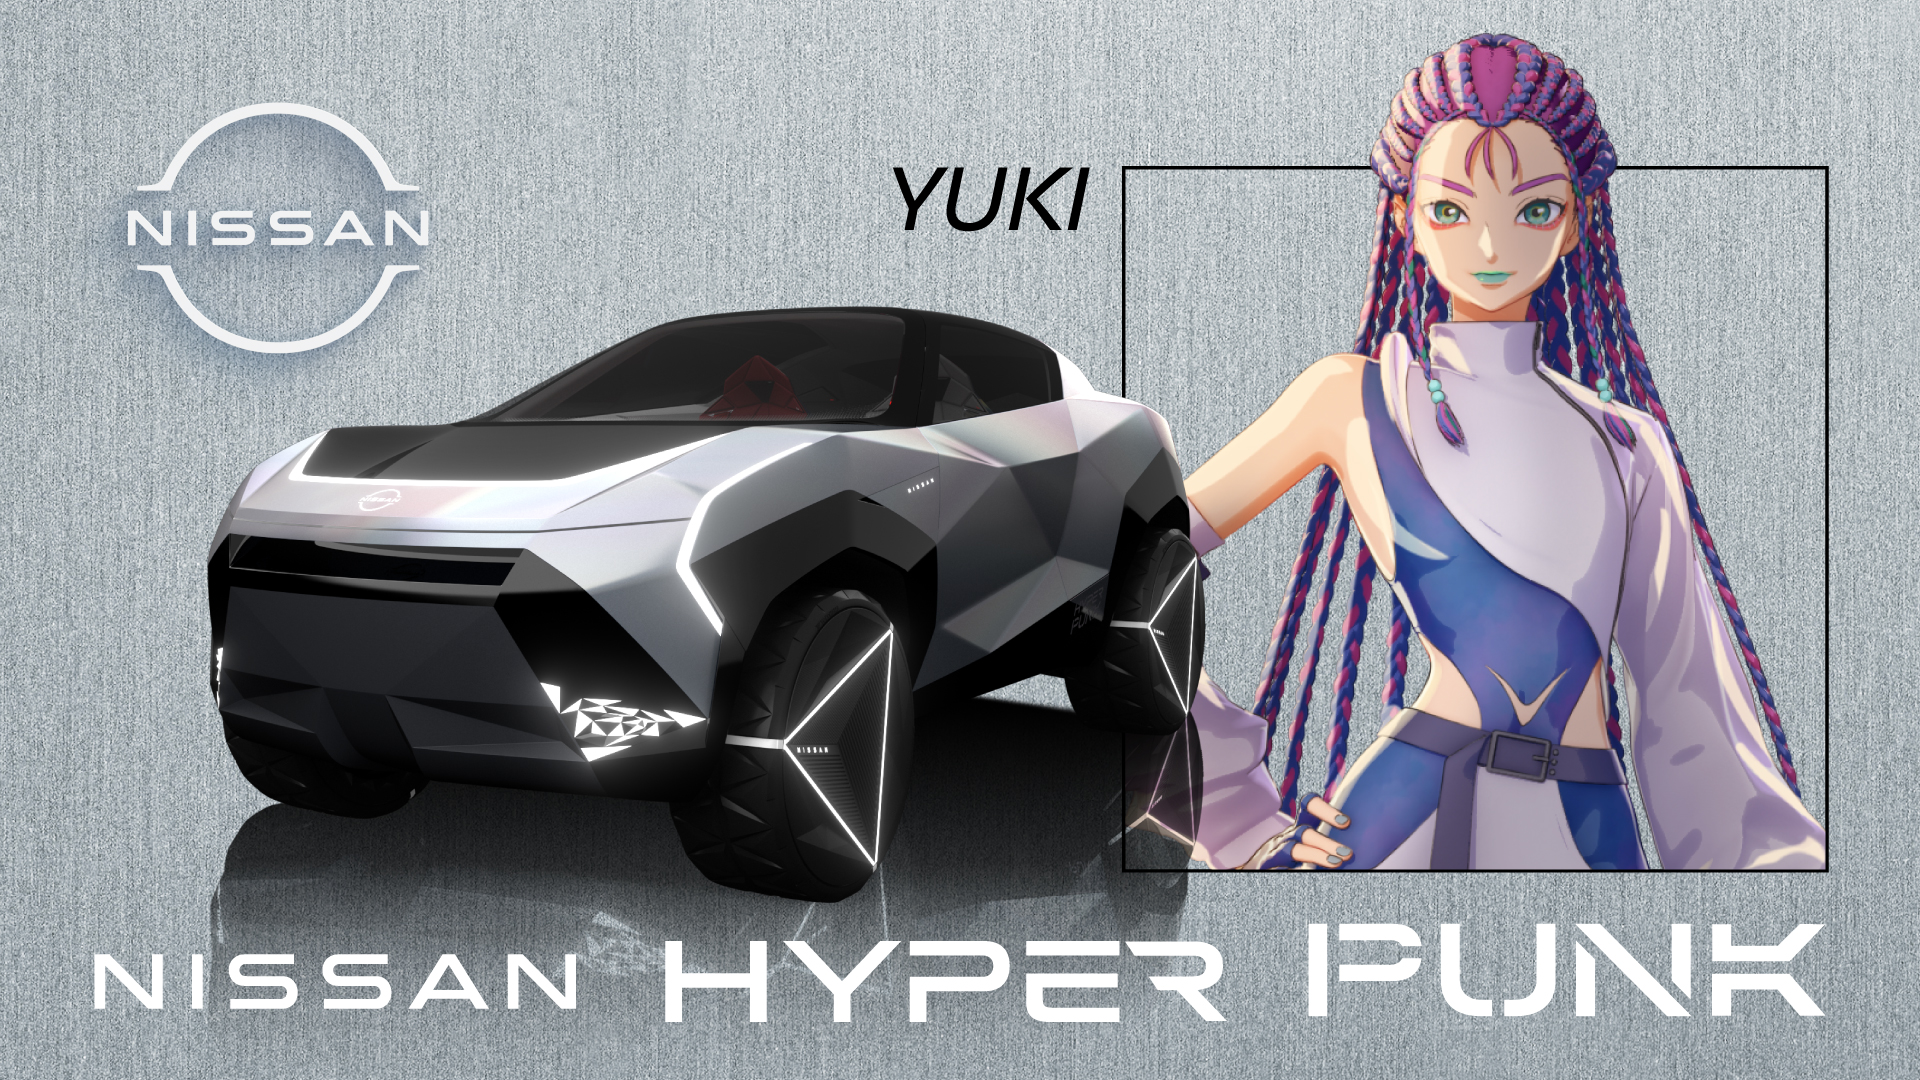 Nissan Hyper Punk, Konsep Mobil Listrik Dirancang Dengan Mengedepankan Gaya dan Inovasi